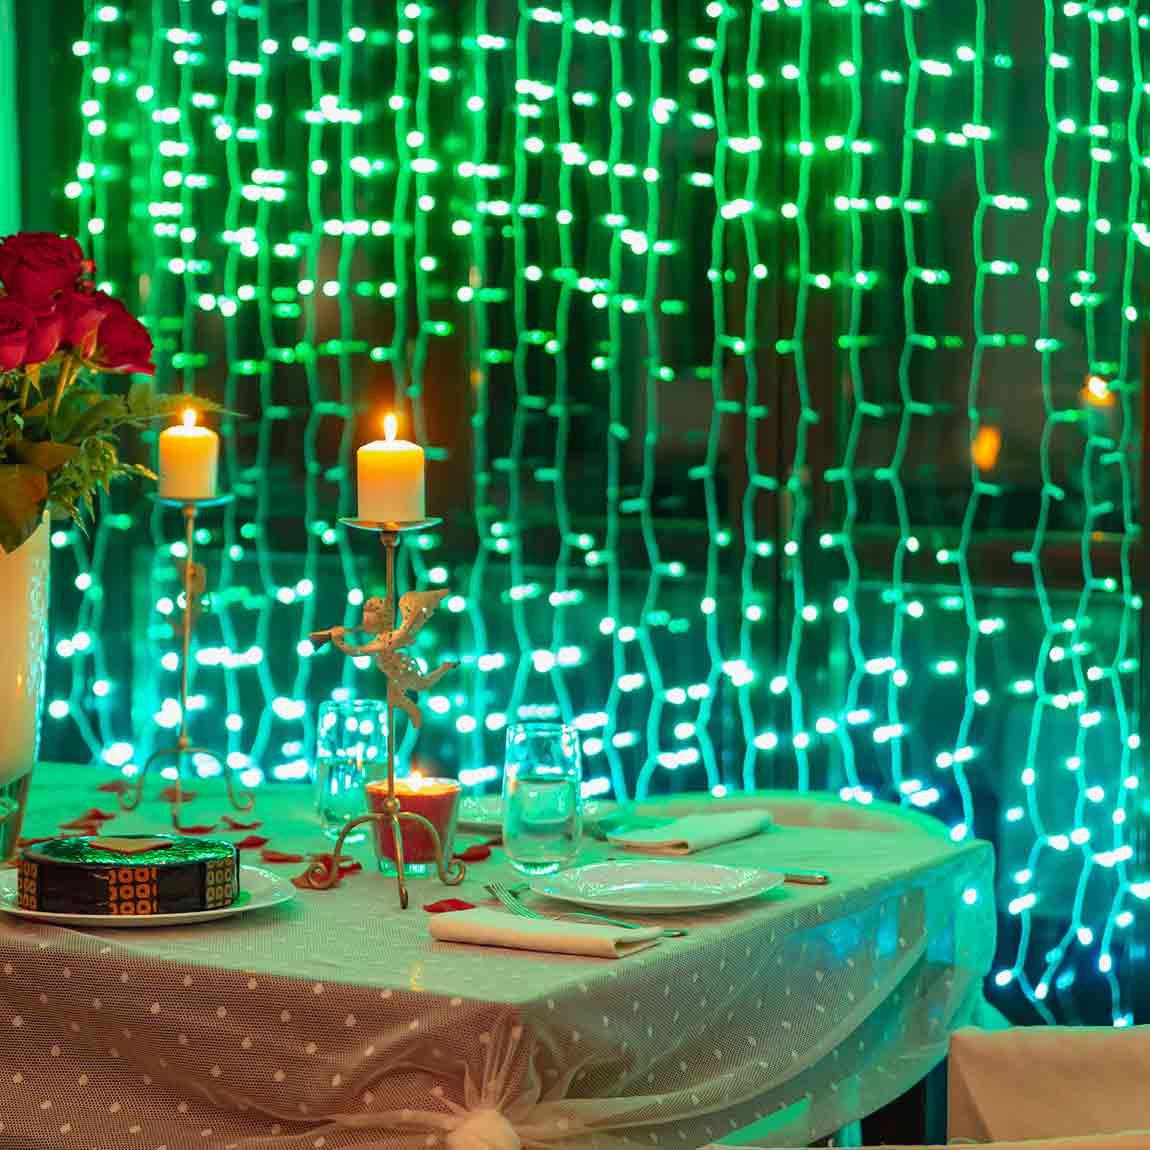 Twinkly Curtain - Smarter Lichter-Vorhang - Lifestyle - grüner Vorhang